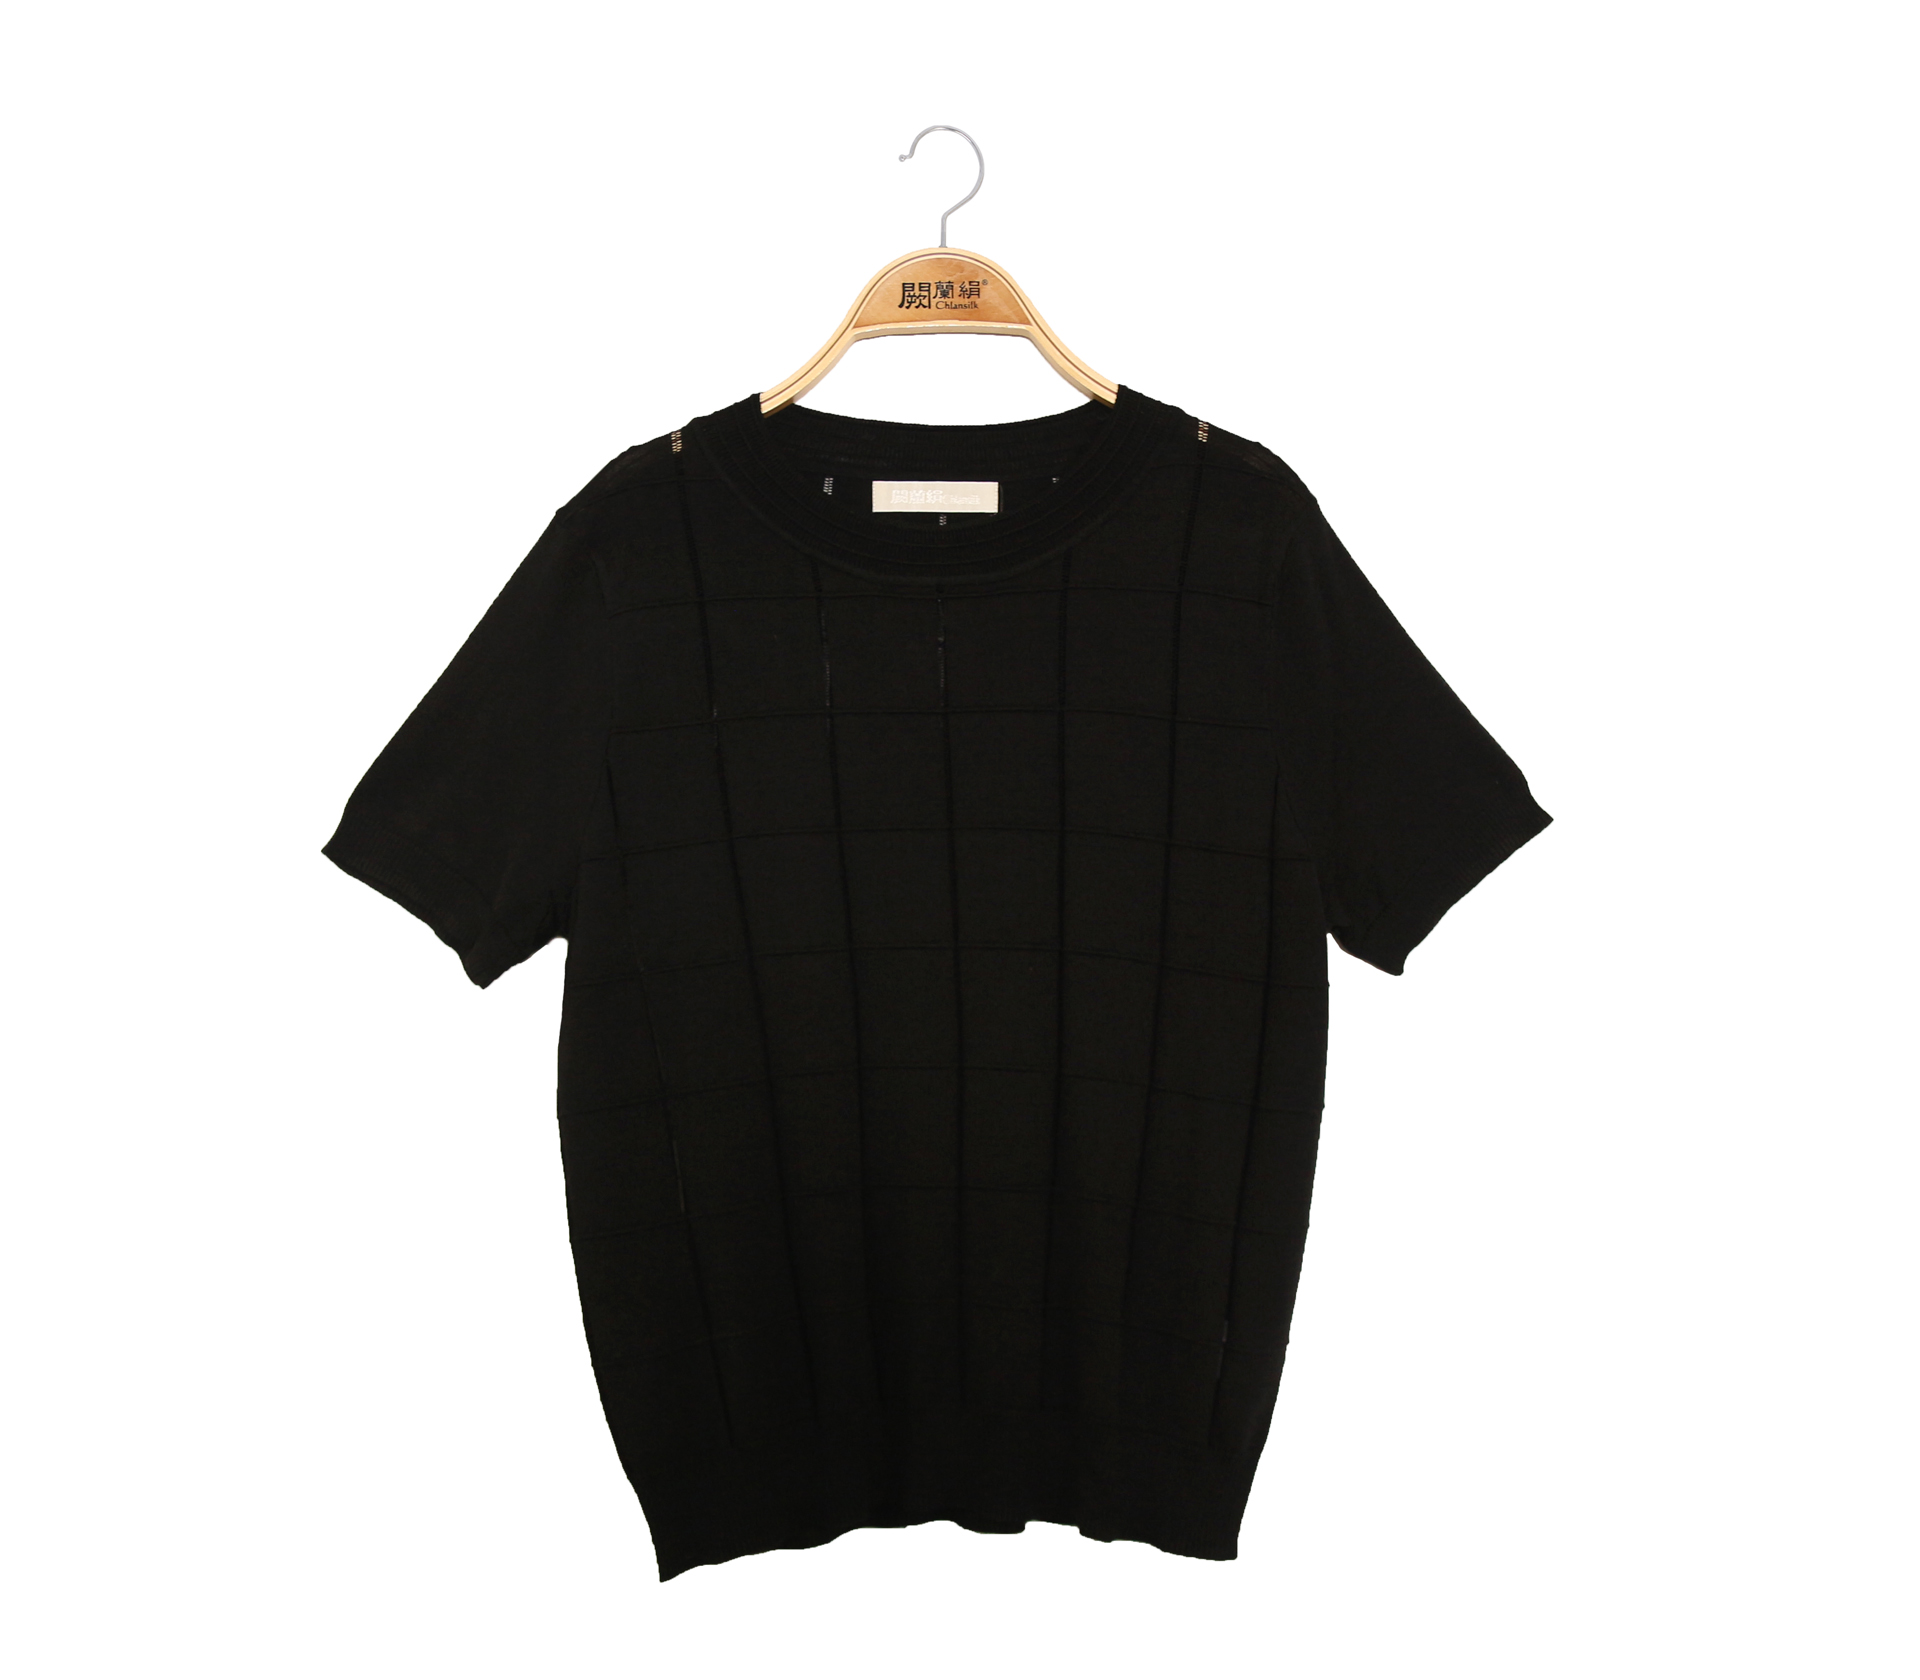 闕蘭絹方格簍空造型針織蠶絲上衣 - 黑色 - 62123